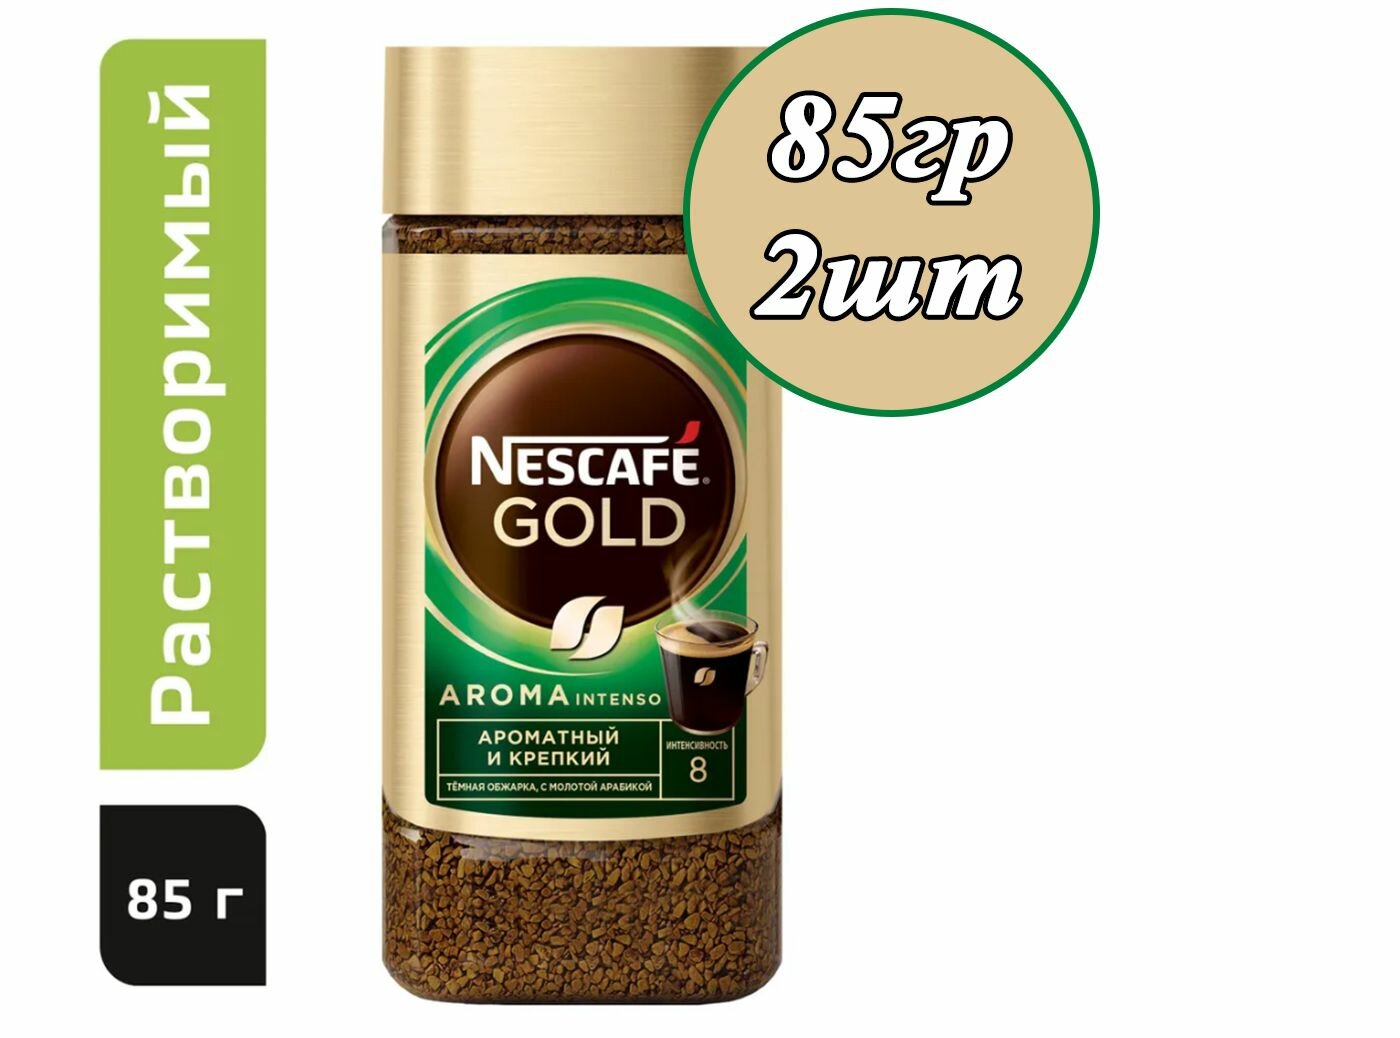 Nescafe Gold Aroma Intenso 85гр х 2шт натуральный растворимый сублимированный кофе